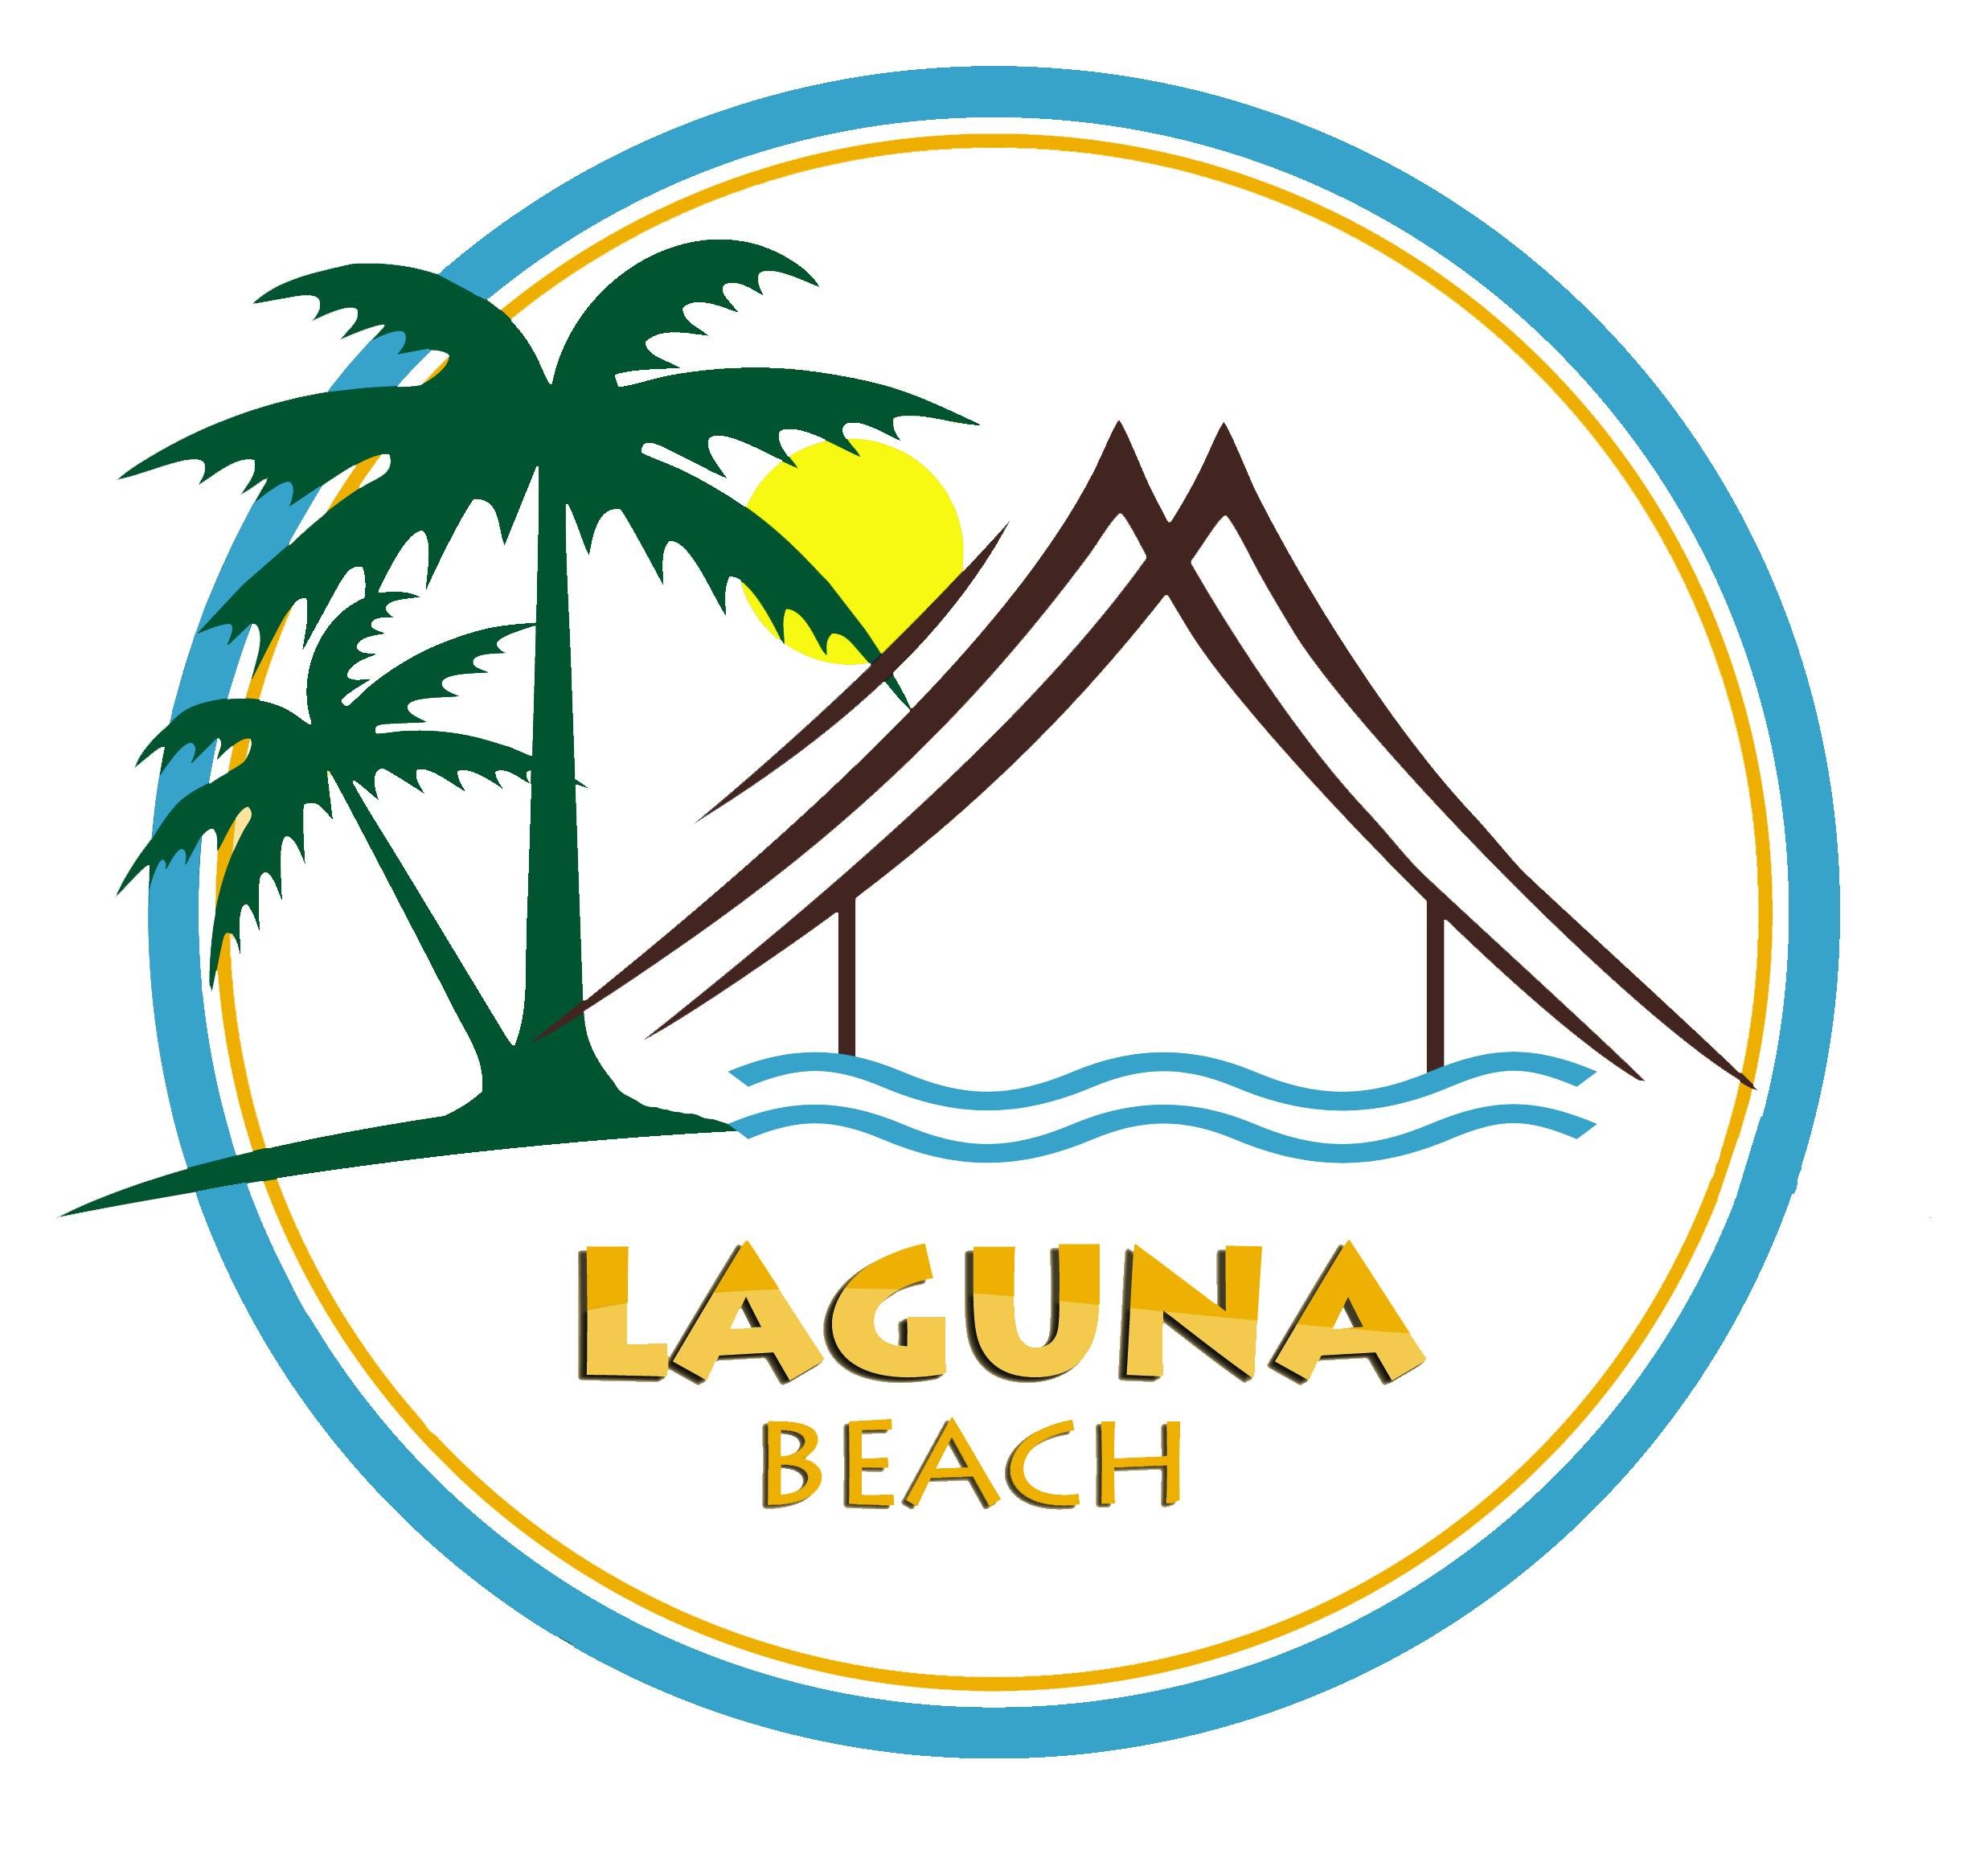 Laguna beach est un hôtel les pieds dans l'eau, en plein centre ville de Morondava.
Piscine à débordement-Restaurant la taverne
+261344920562